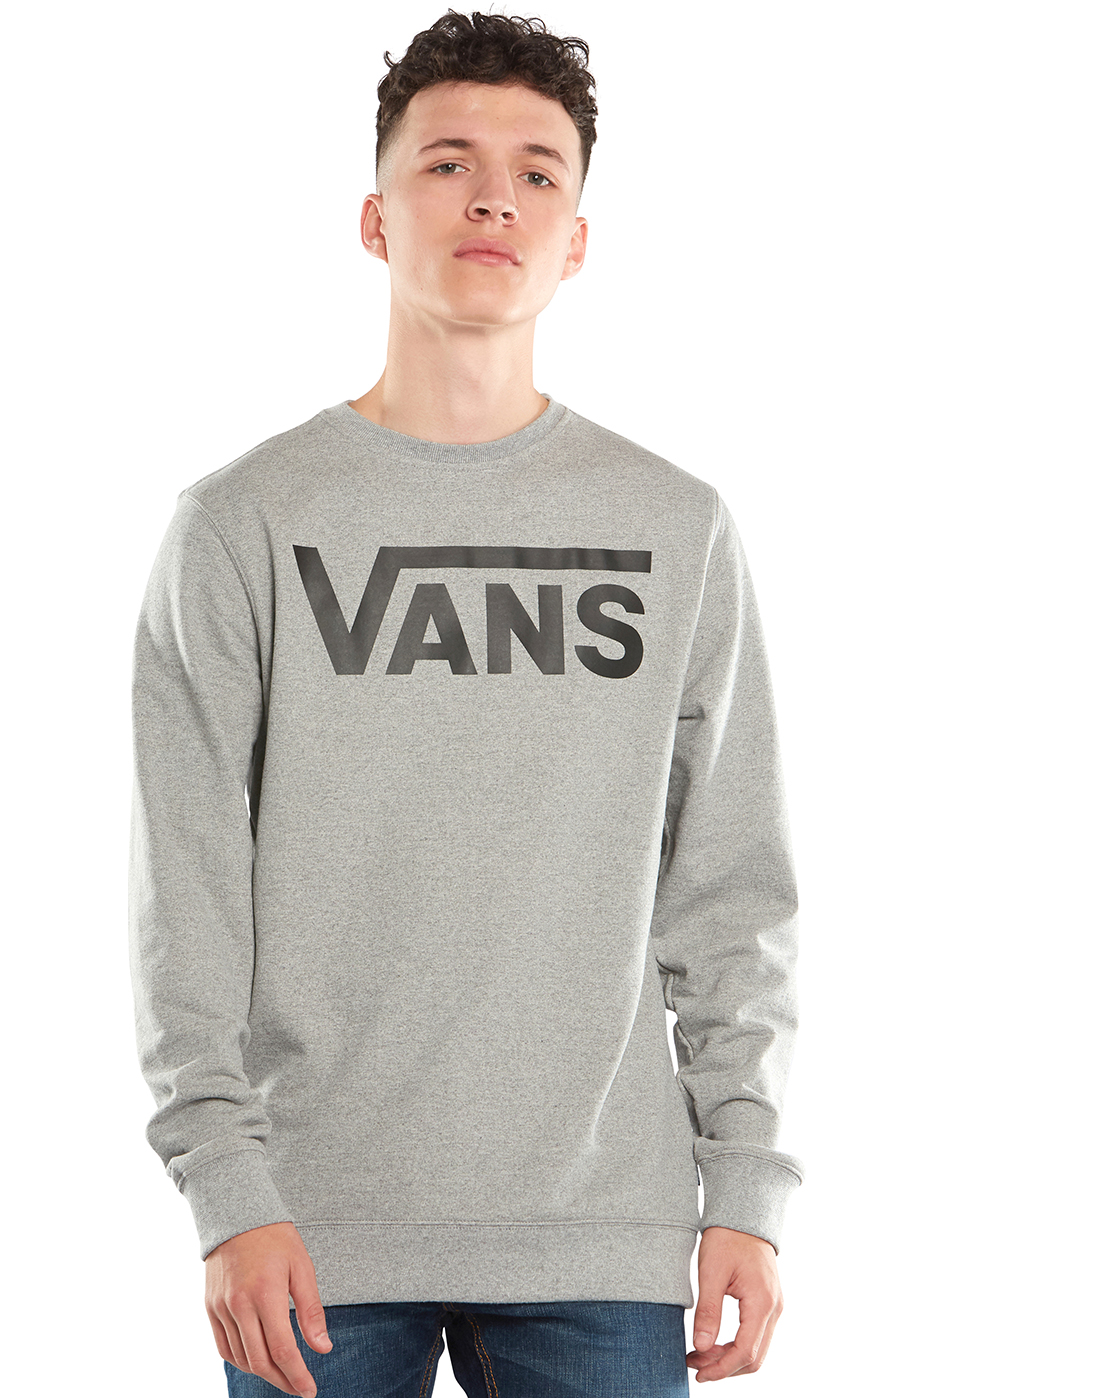 Vans Mens Crew Neck Sweatshirt - Grey | Life Style Sports IE